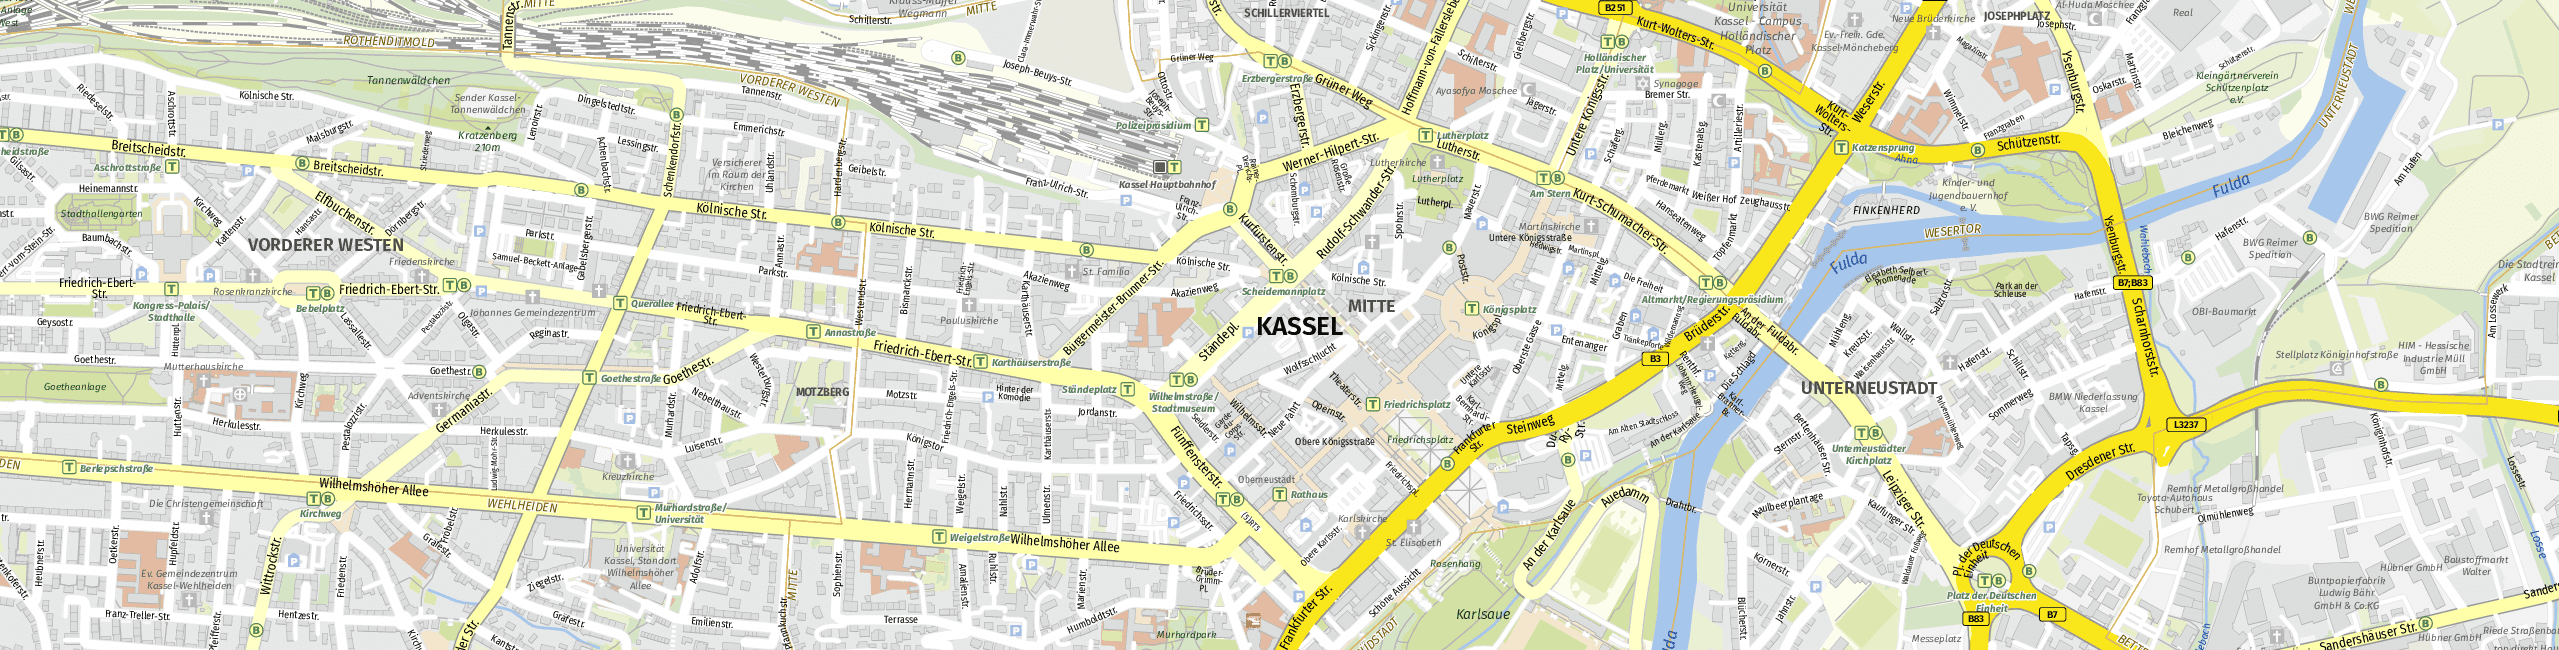 Stadtplan Kassel zum Downloaden.